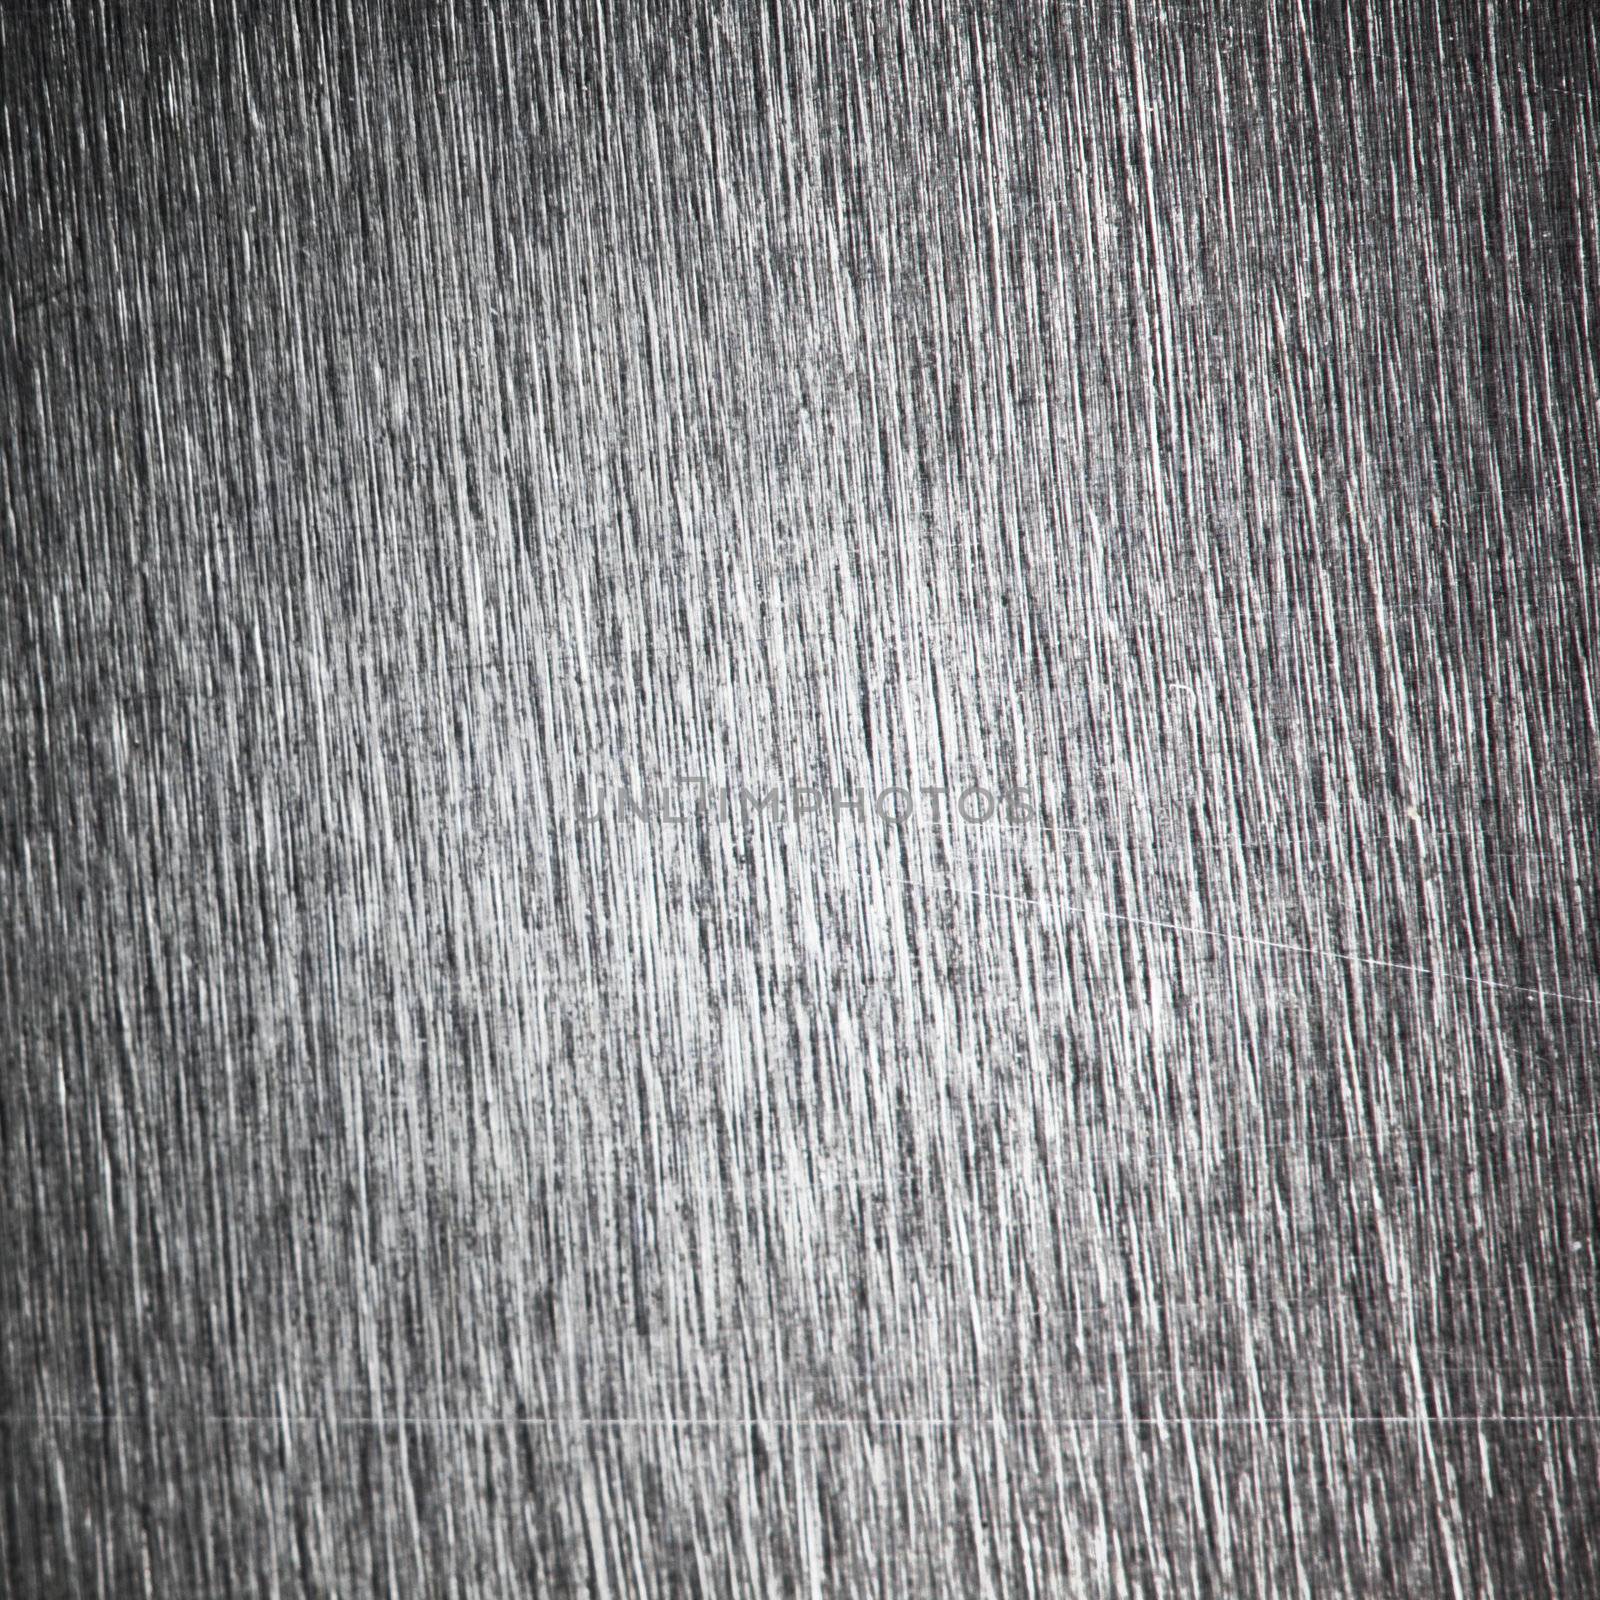 aluminium metal background close up